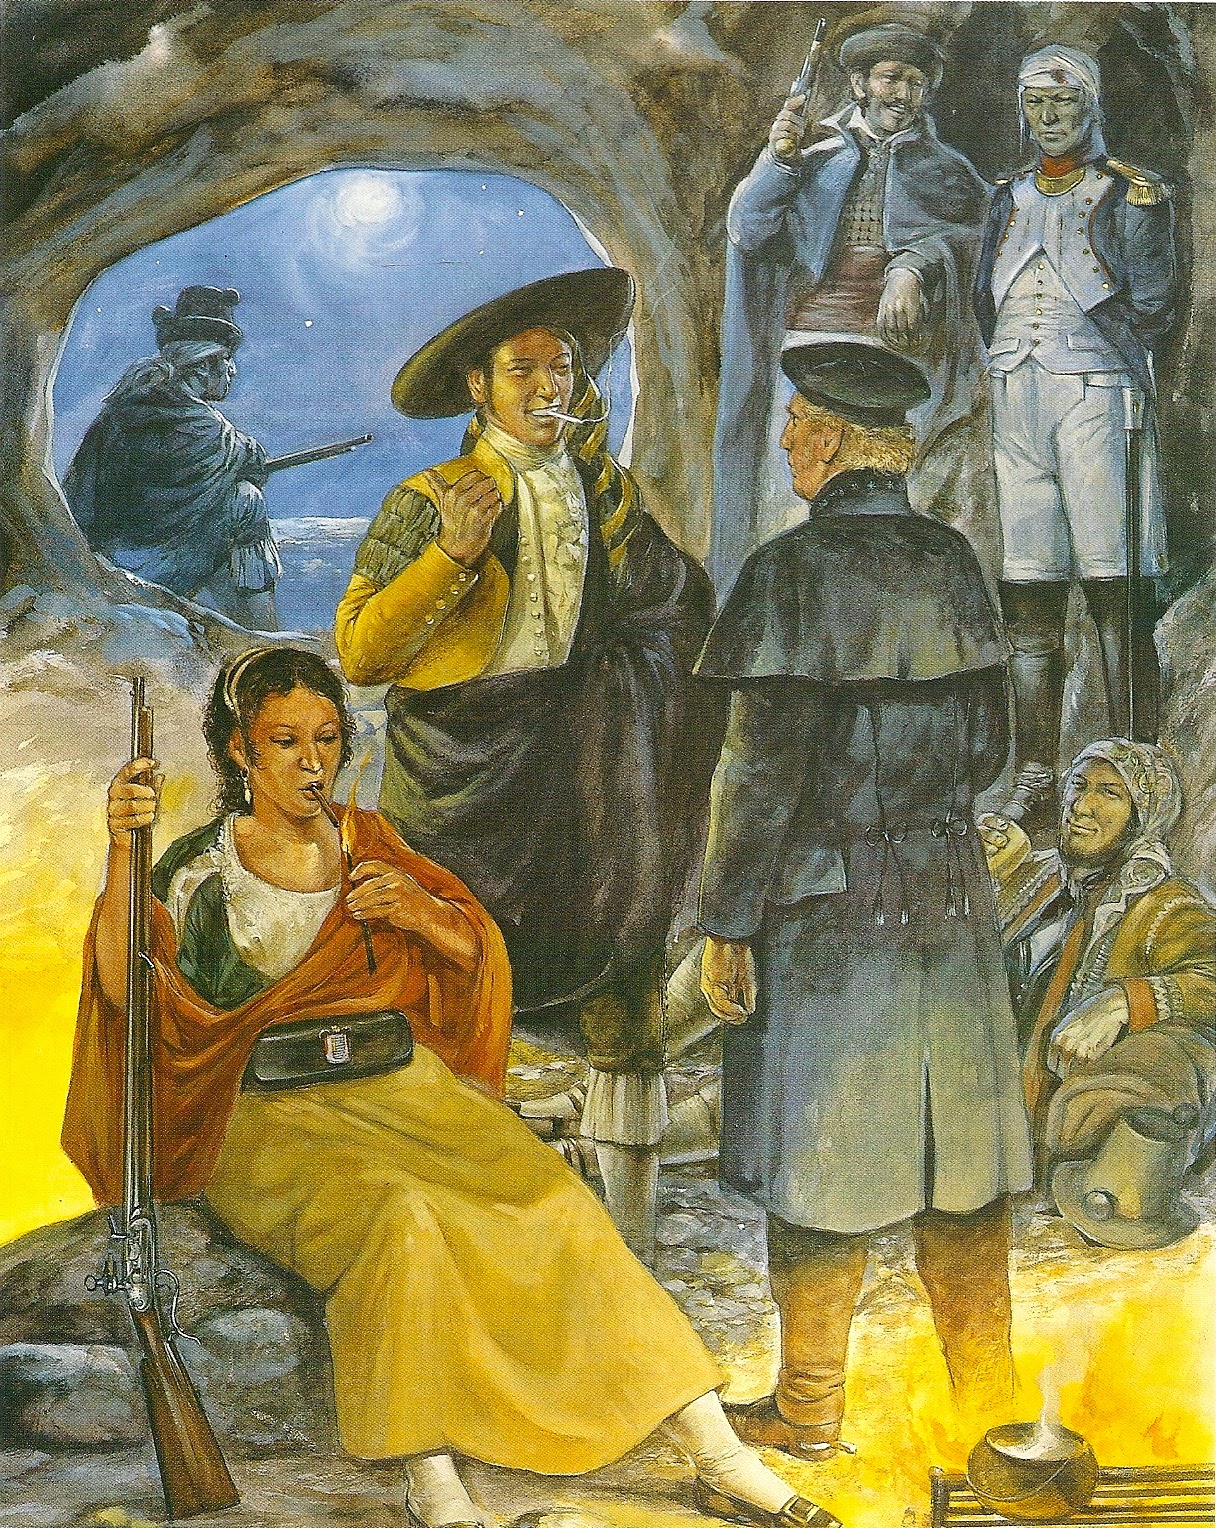 Гверильясы прячутся в пещере, где в качестве источника света выступает костёр, Испания, 1809 - 1813 гг. Женщина-партизанка также с помощью огня подкуривает сигарету.